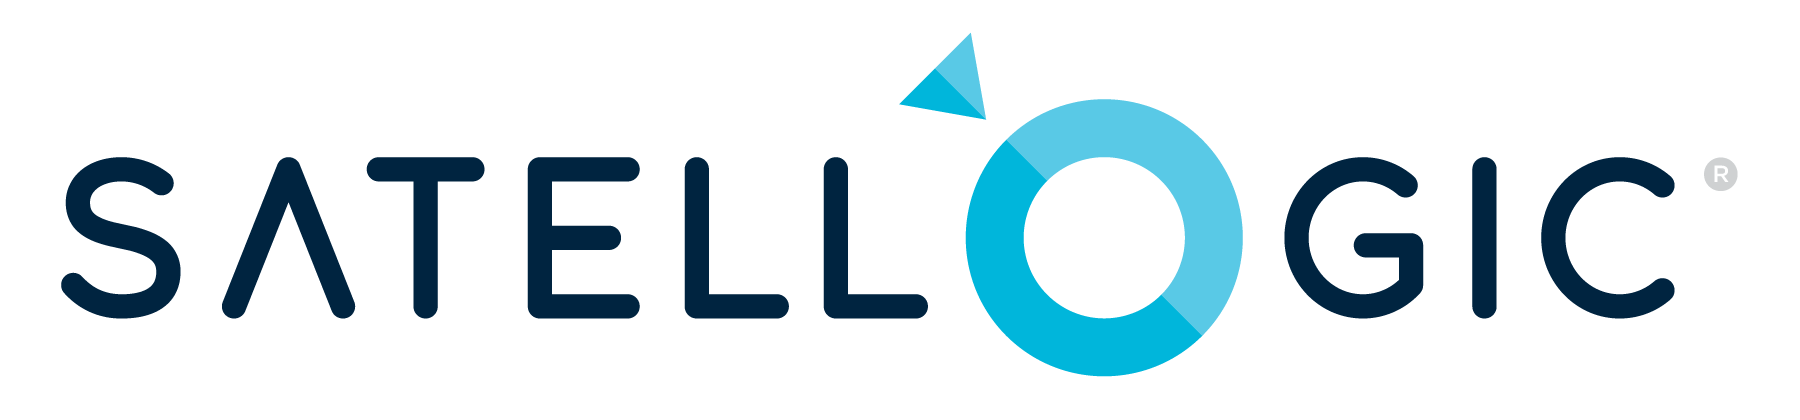 Satellogic_logo.png